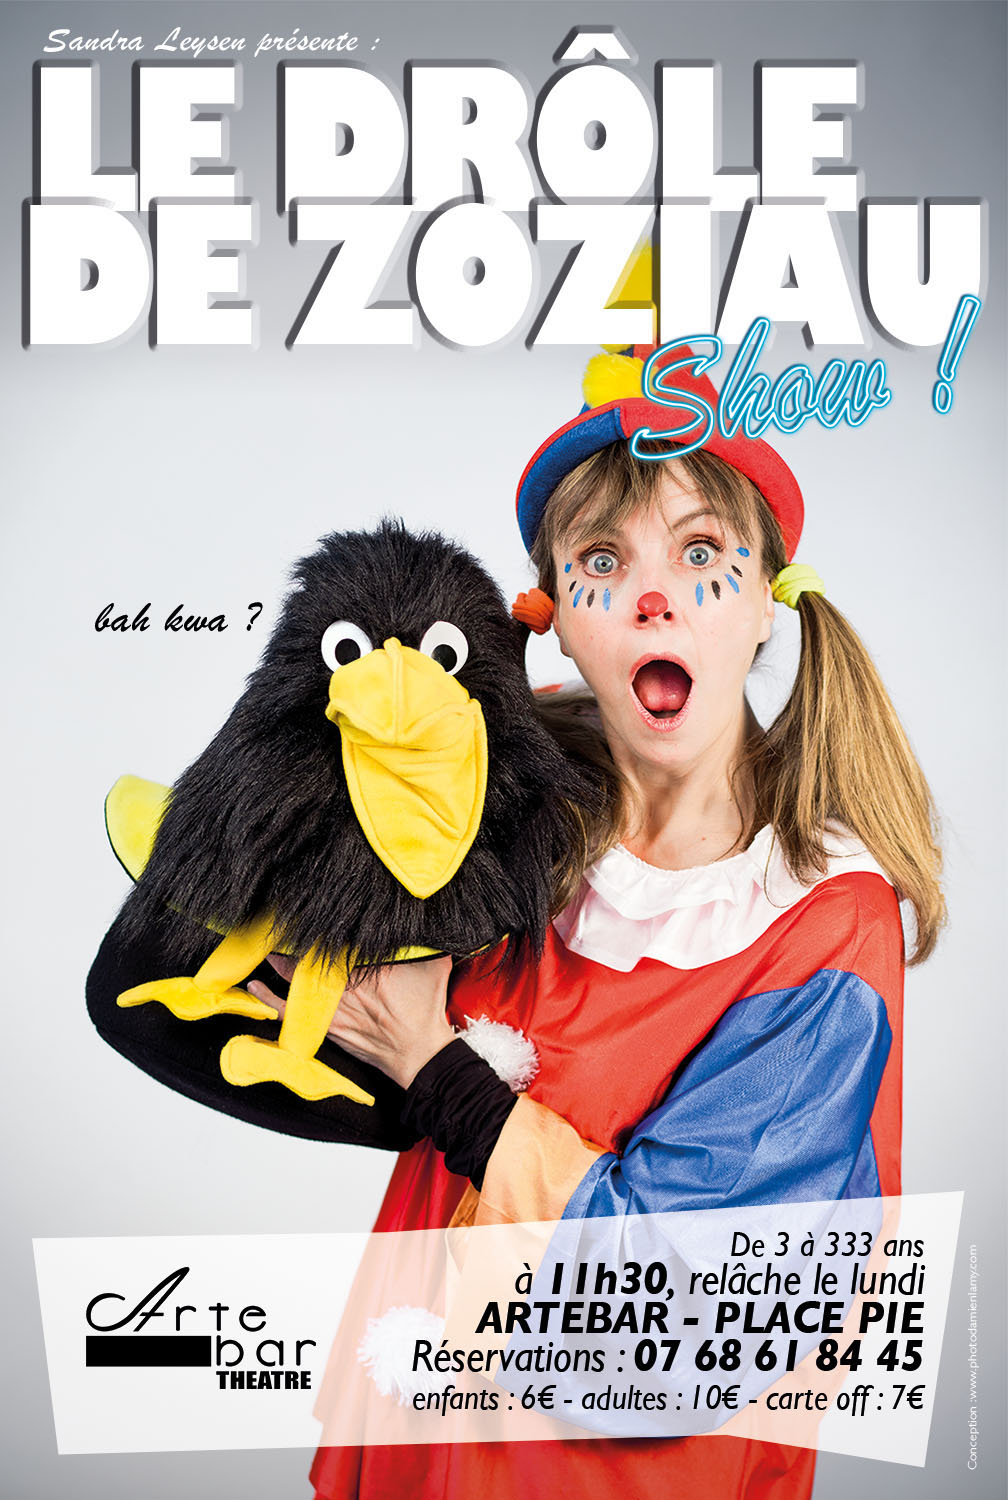 Le spectacle interactif, clownesque, magique et ventriloque, "Le drôle de Zoziau show" pour votre fête d'entreprise.
